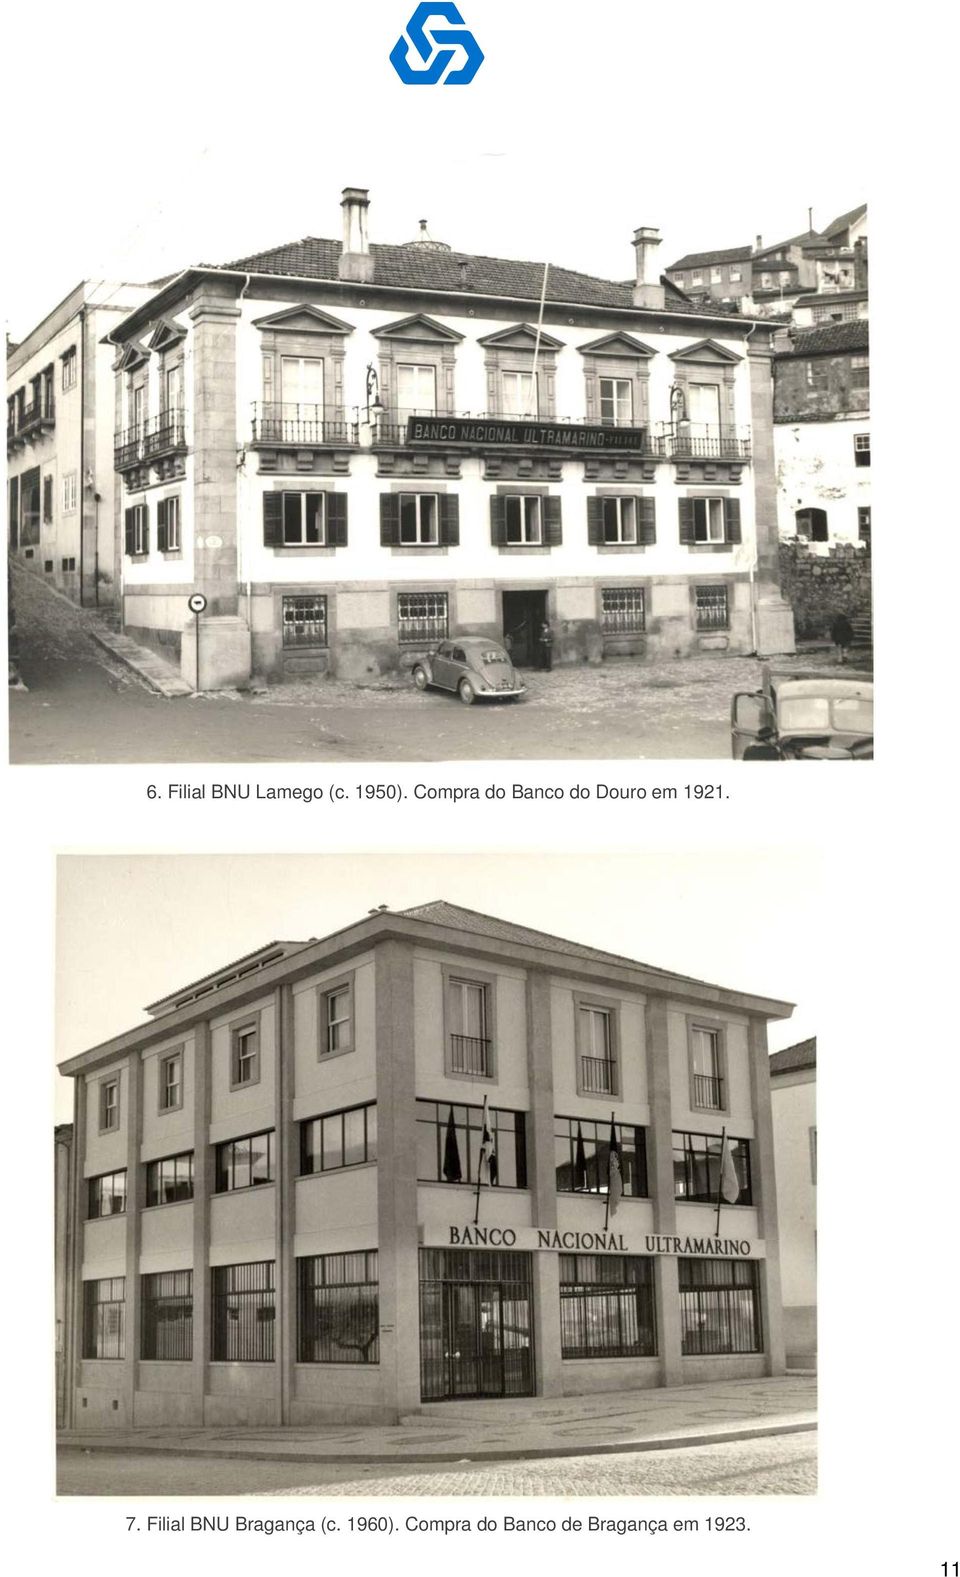 7. Filial BNU Bragança (c. 1960).